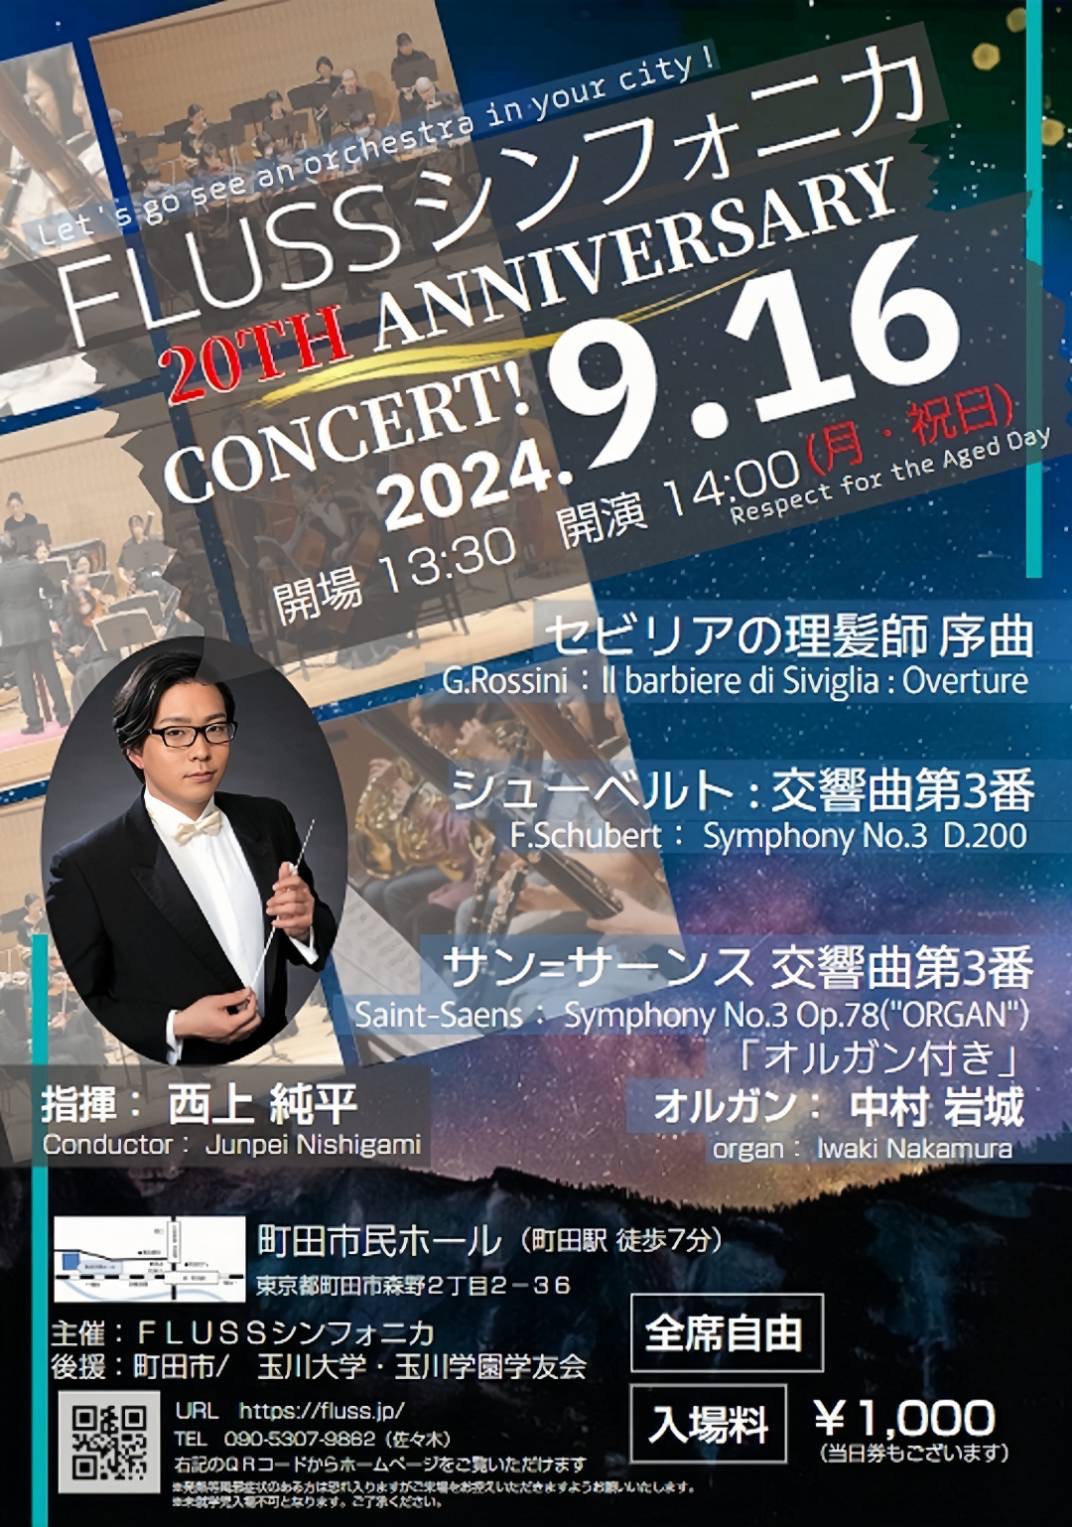 【受託販売】FLUSSシンフォニカ 20TH ANNIVERSARY CONCERT!